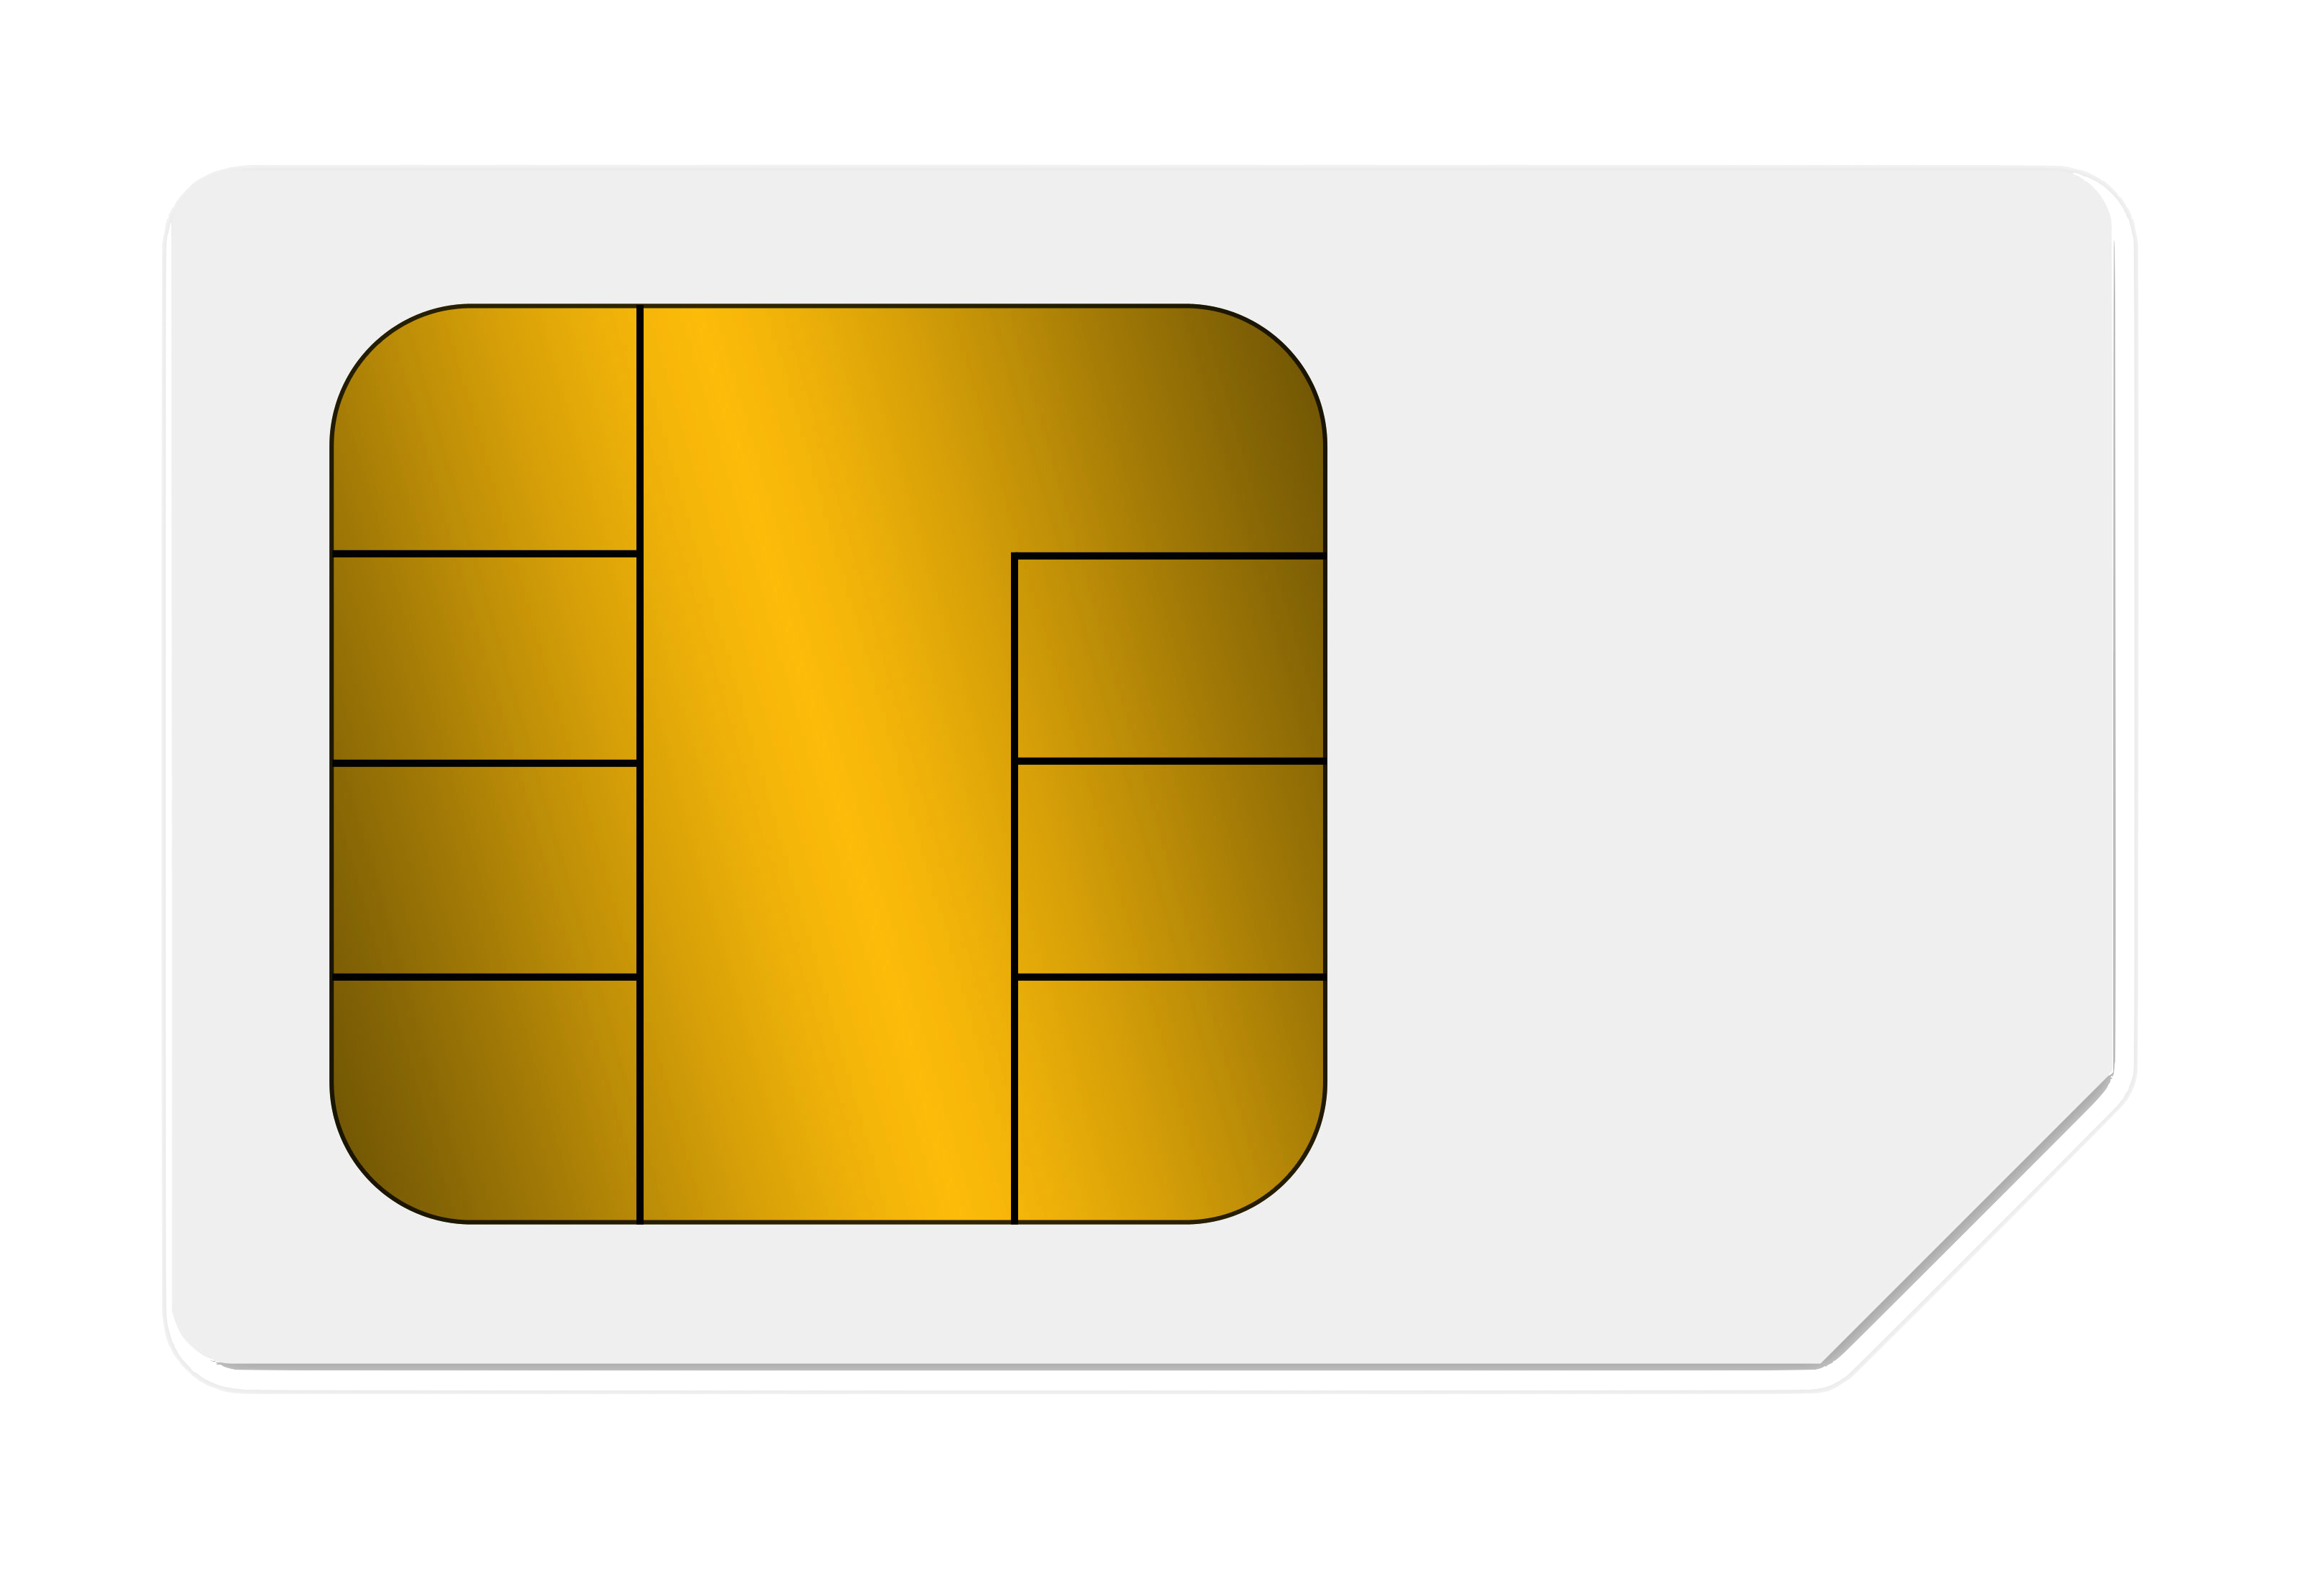 Tarjeta SIM PNG